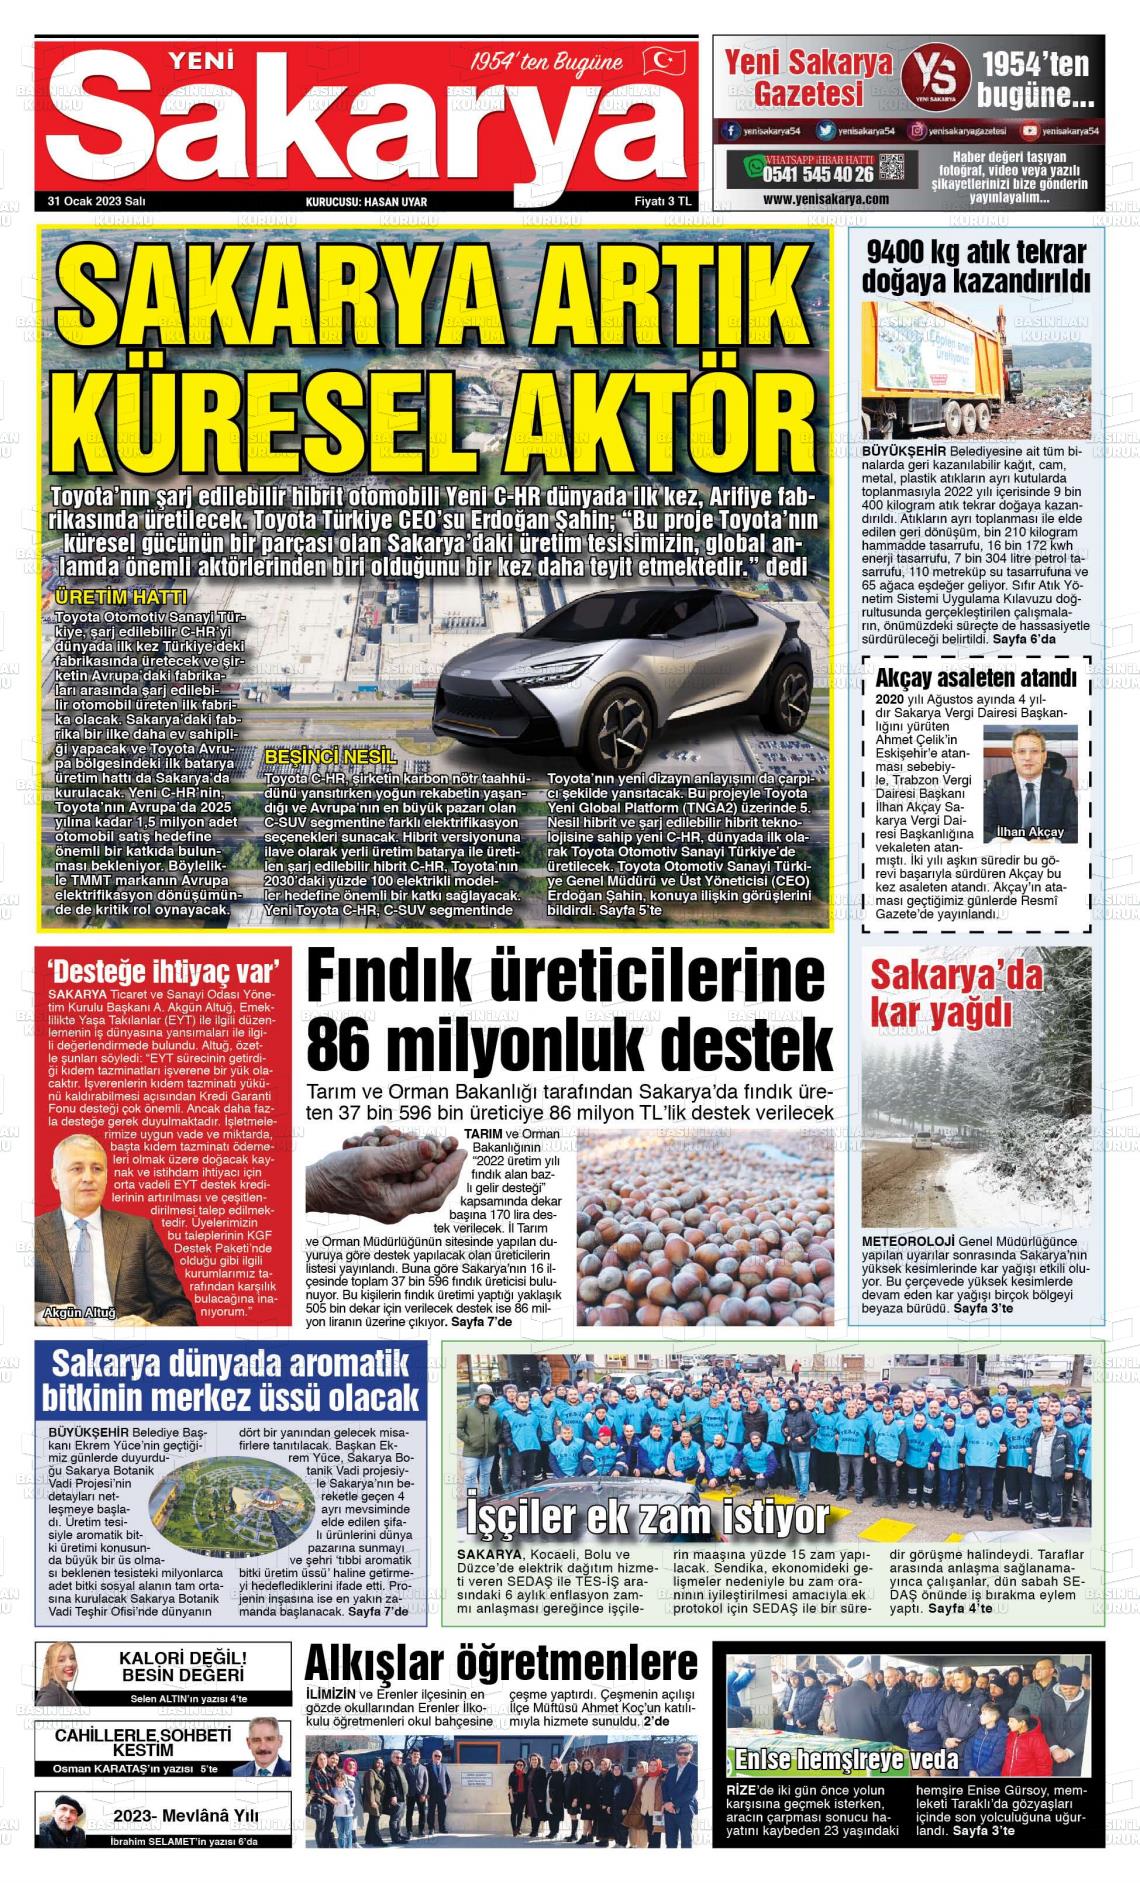 31 Ocak 2023 Yeni Sakarya Gazete Manşeti